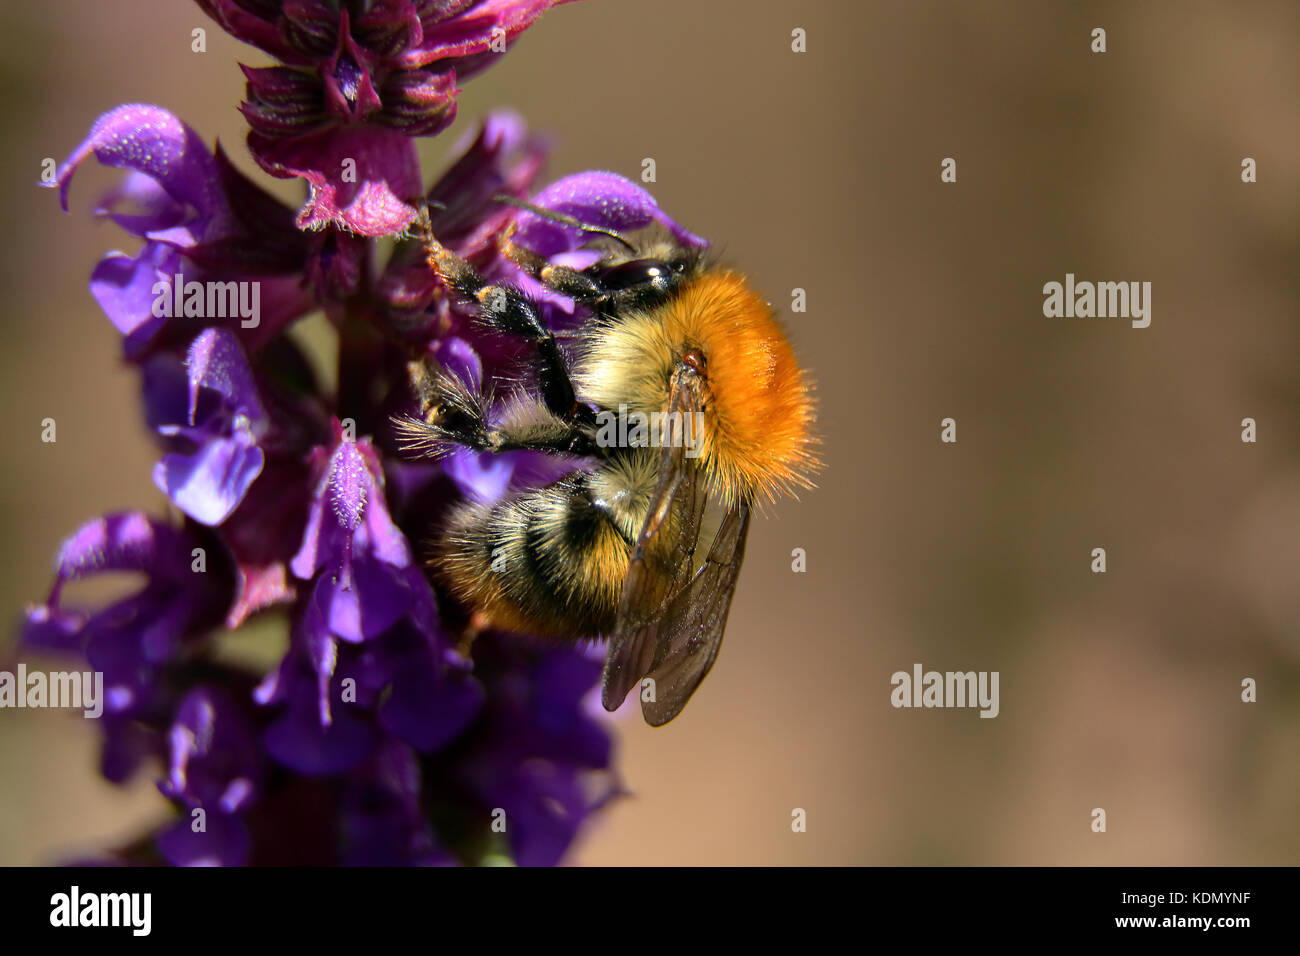 bumble bee feeding on nectar on purple flower salvia Stock Photo